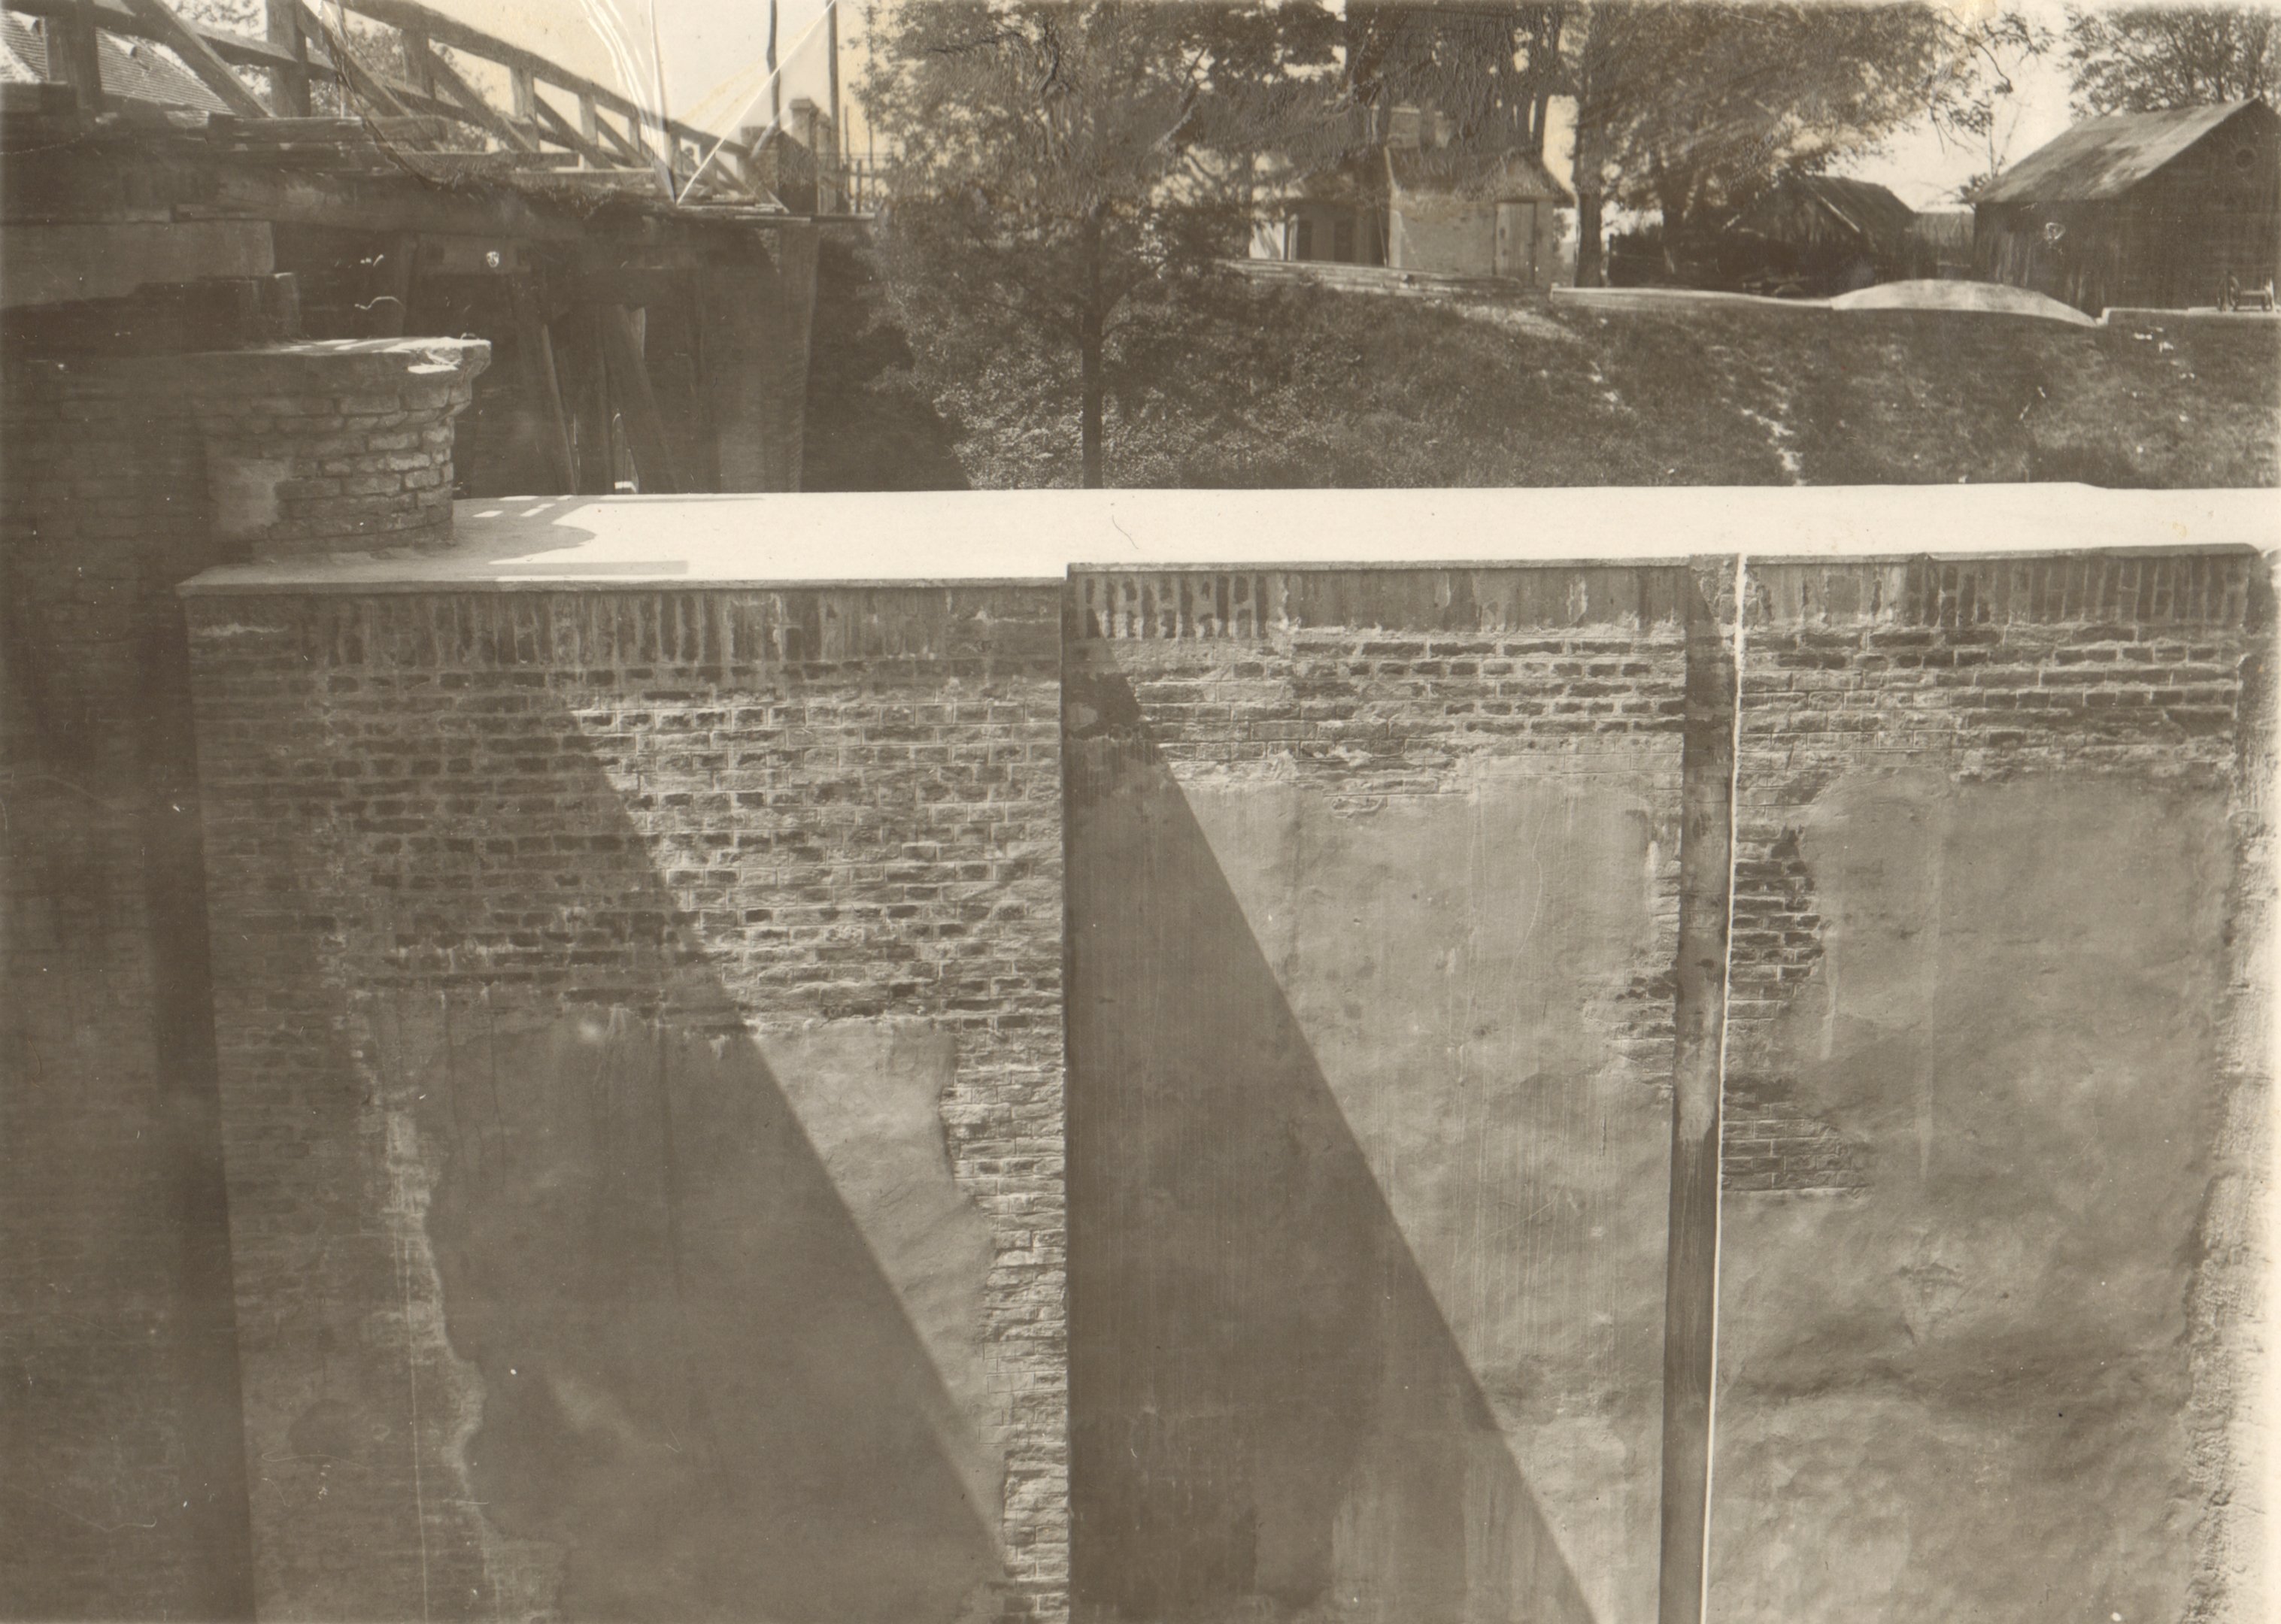 A hajózózsilip jobboldali falának javítása. Az alsó kapu alatti falrész javítás után, 1932. május 18. (Magyar Környezetvédelmi és Vízügyi Múzeum - Duna Múzeum CC BY-NC-SA)